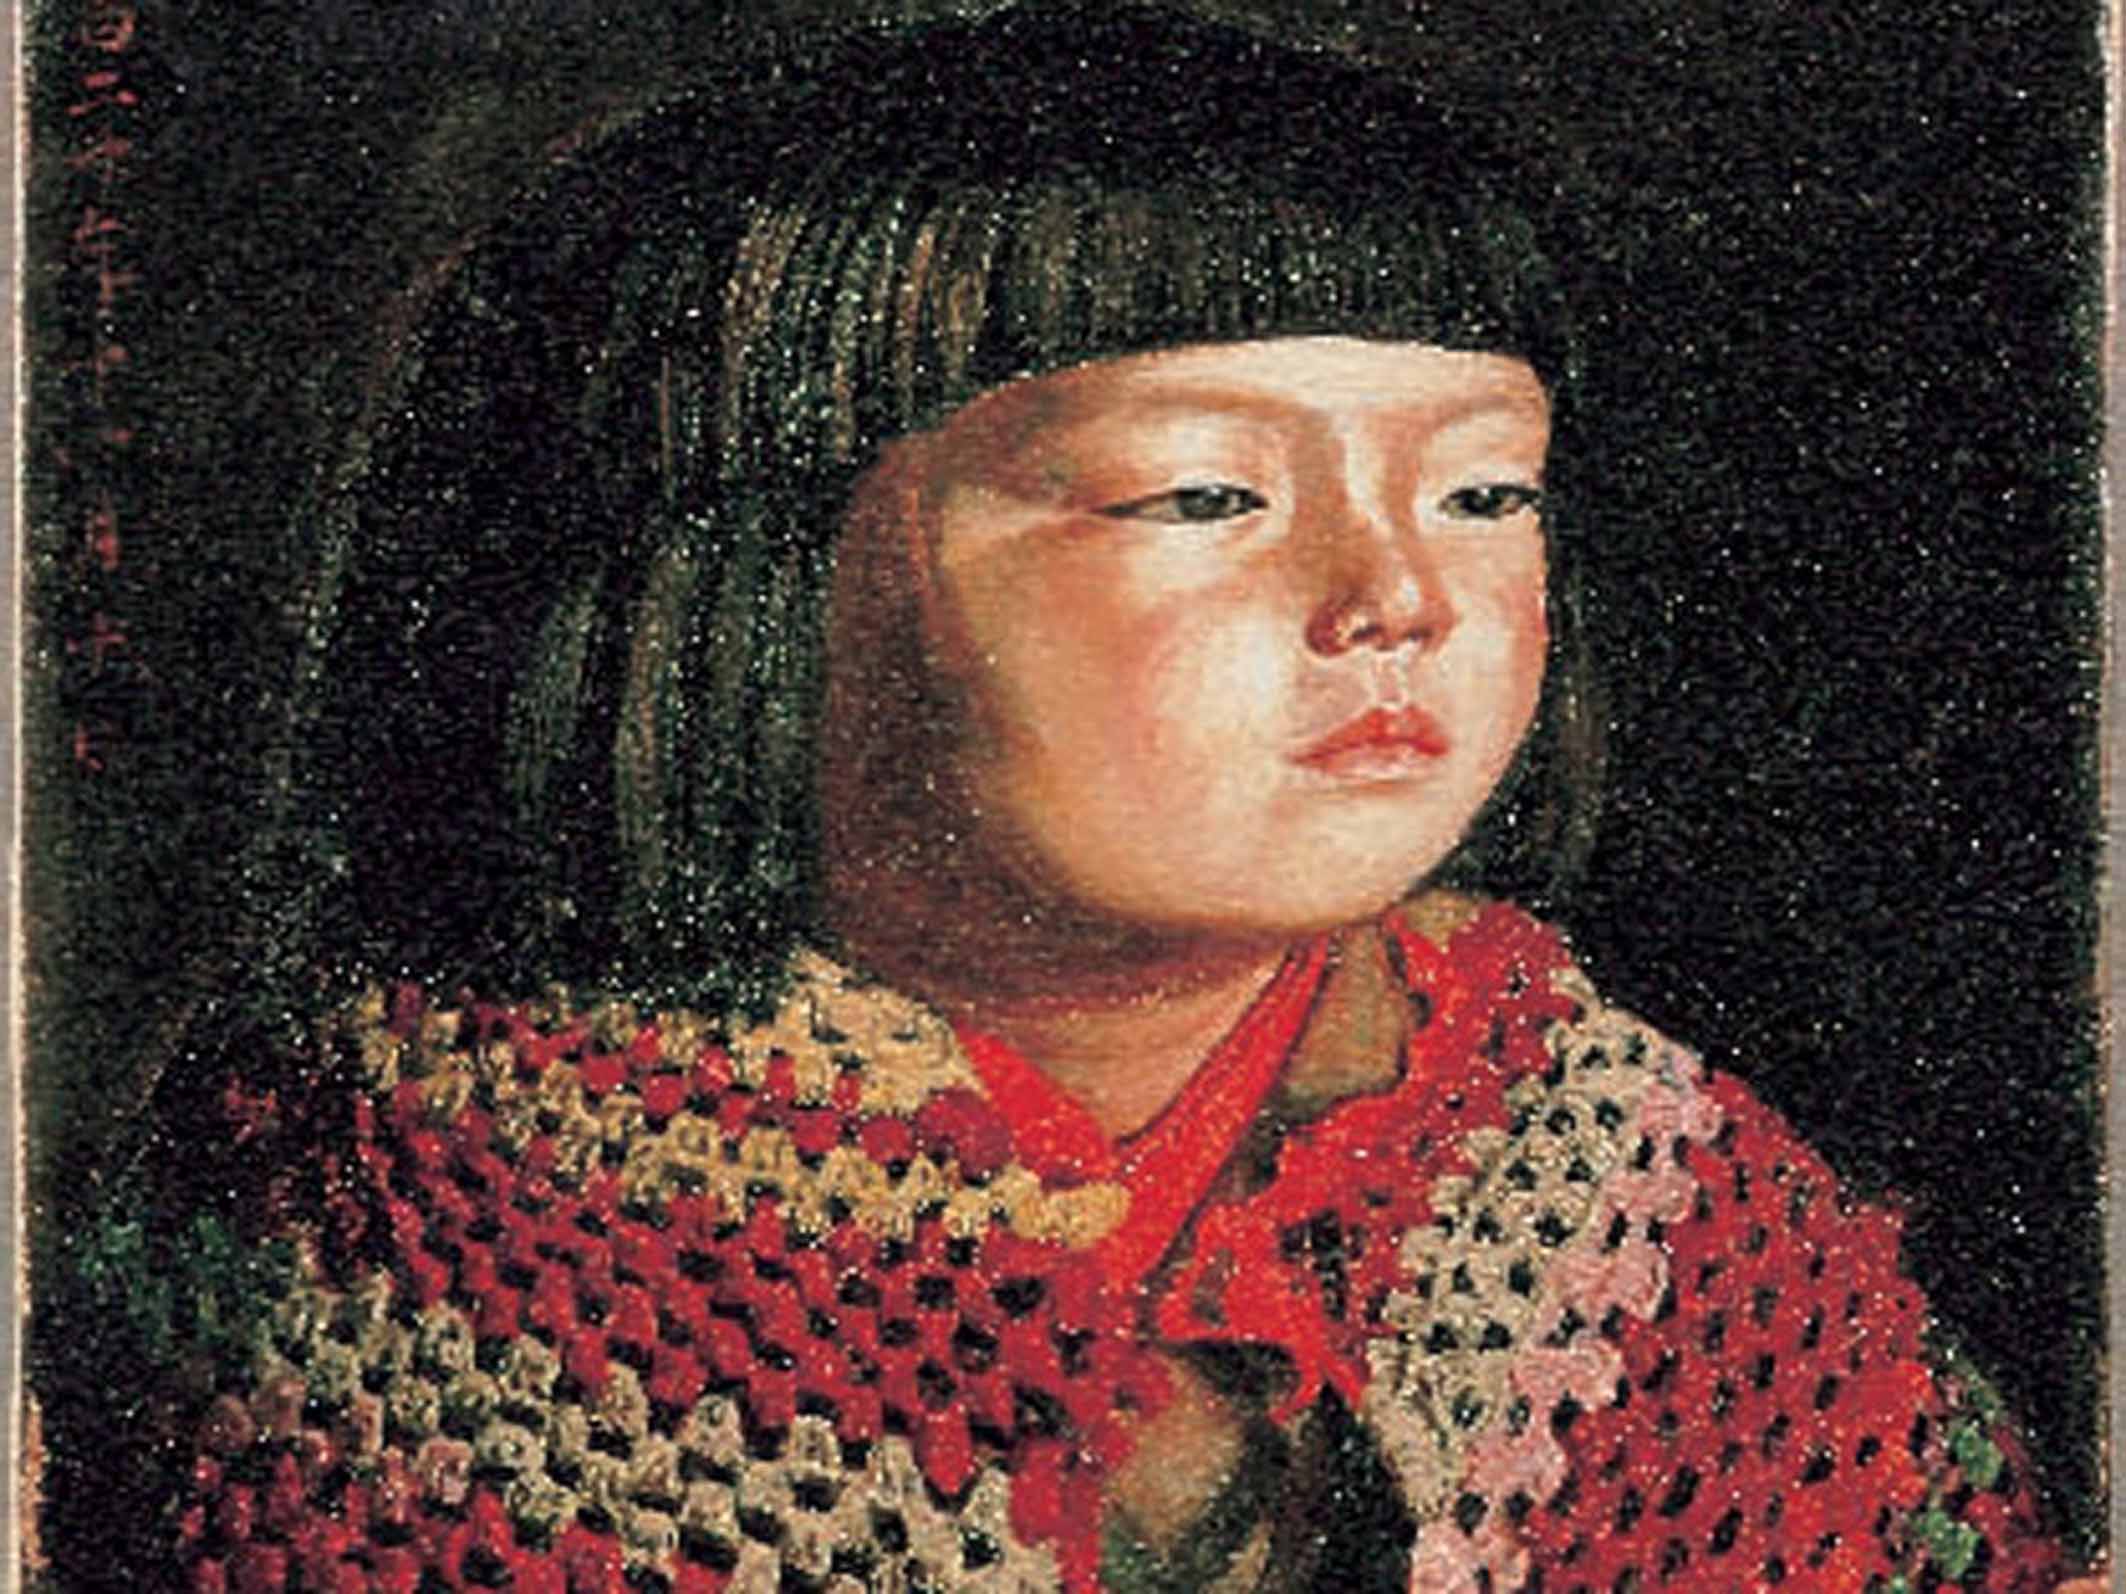 ウッドワン美術館新館では、岸田劉生《毛糸肩掛せる麗子肖像》を展示しています。